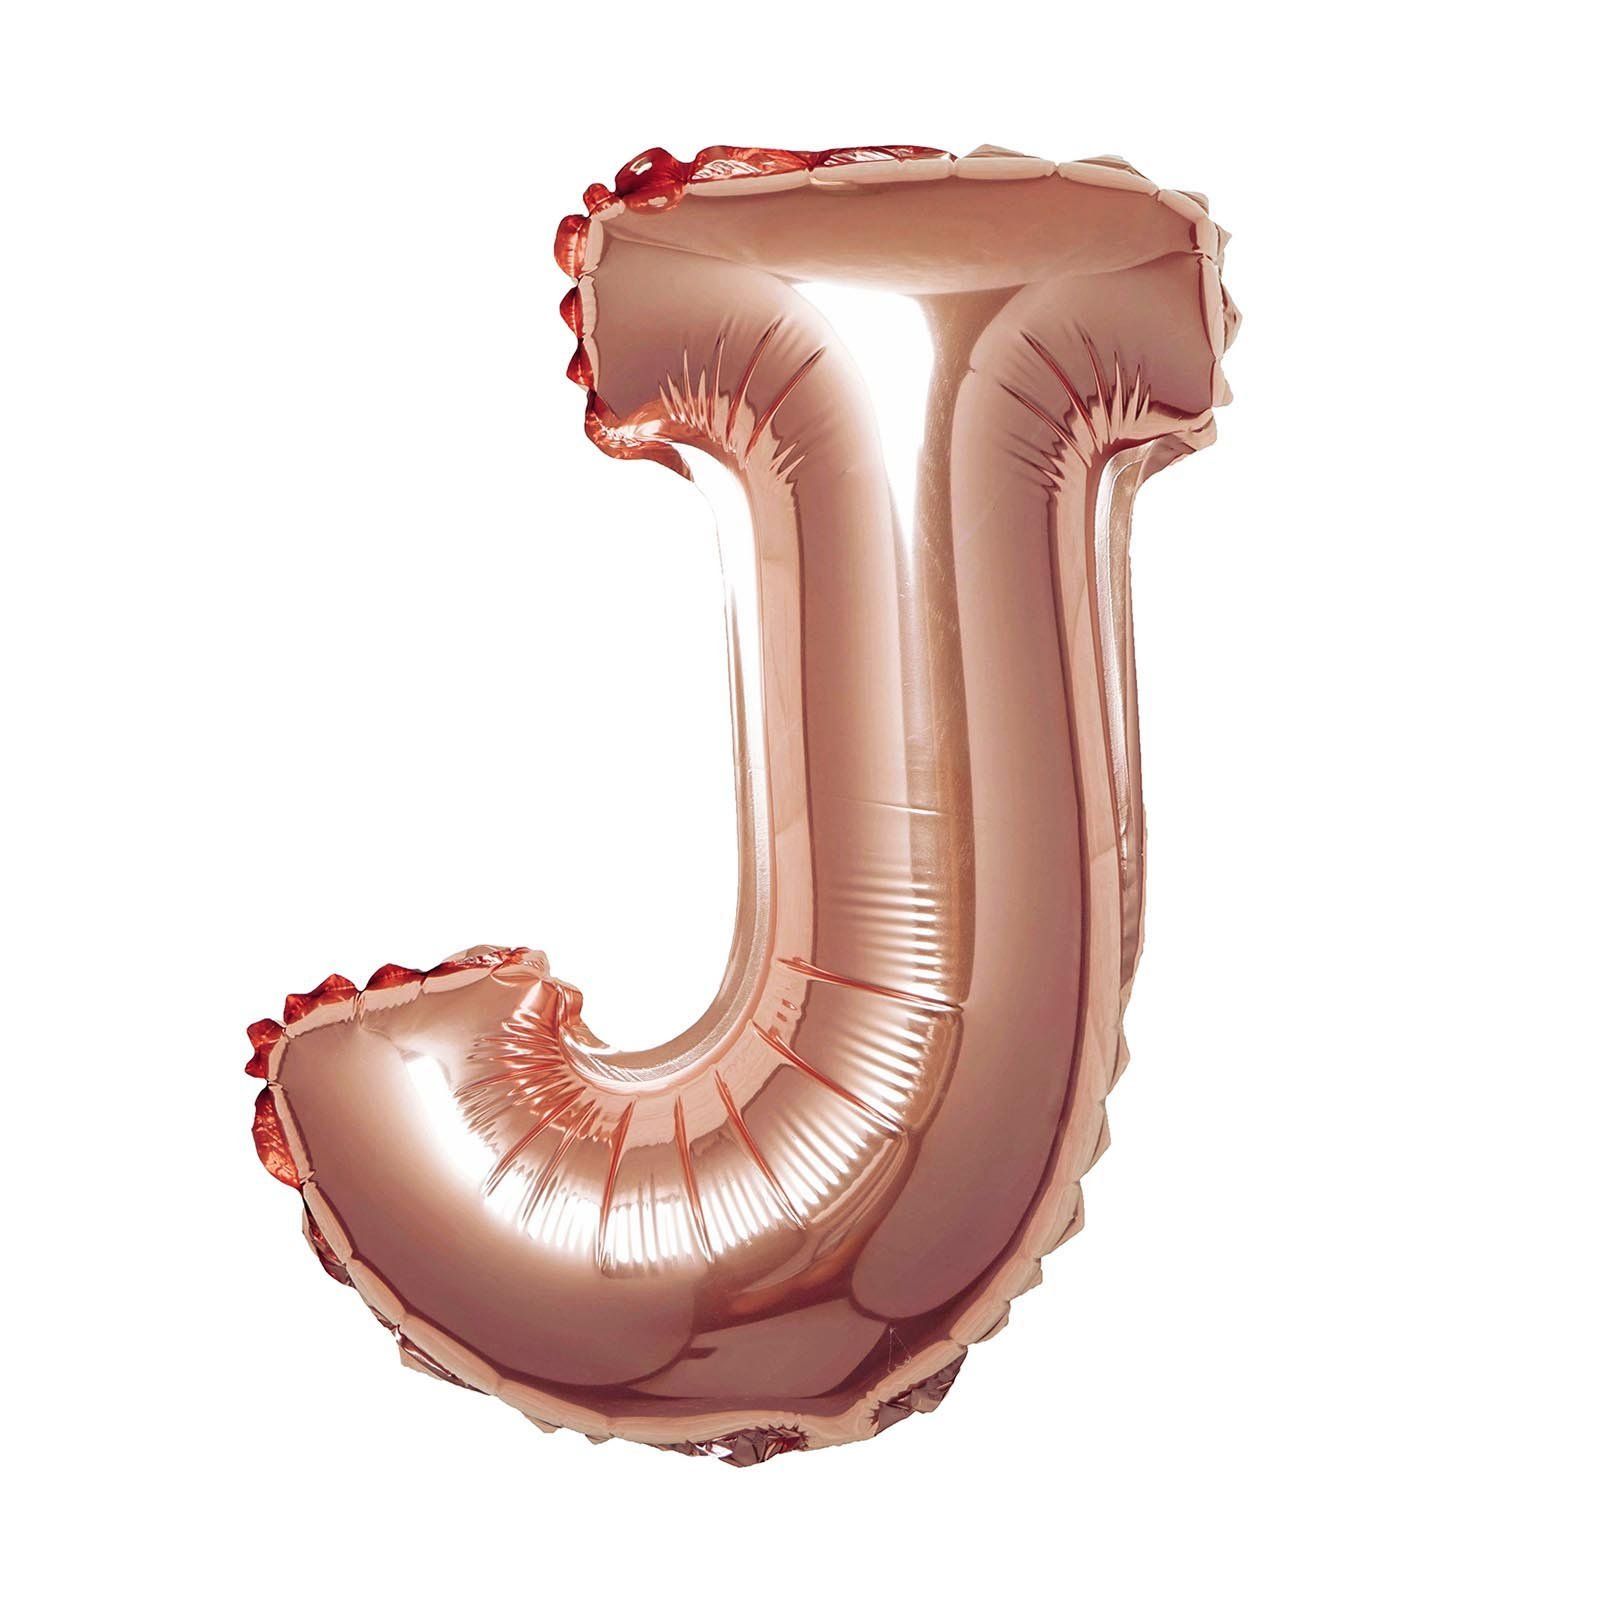  Bong bóng chữ cái 35cm màu vàng hồng (A-Z foil balloons - 16'' Rose Gold) 